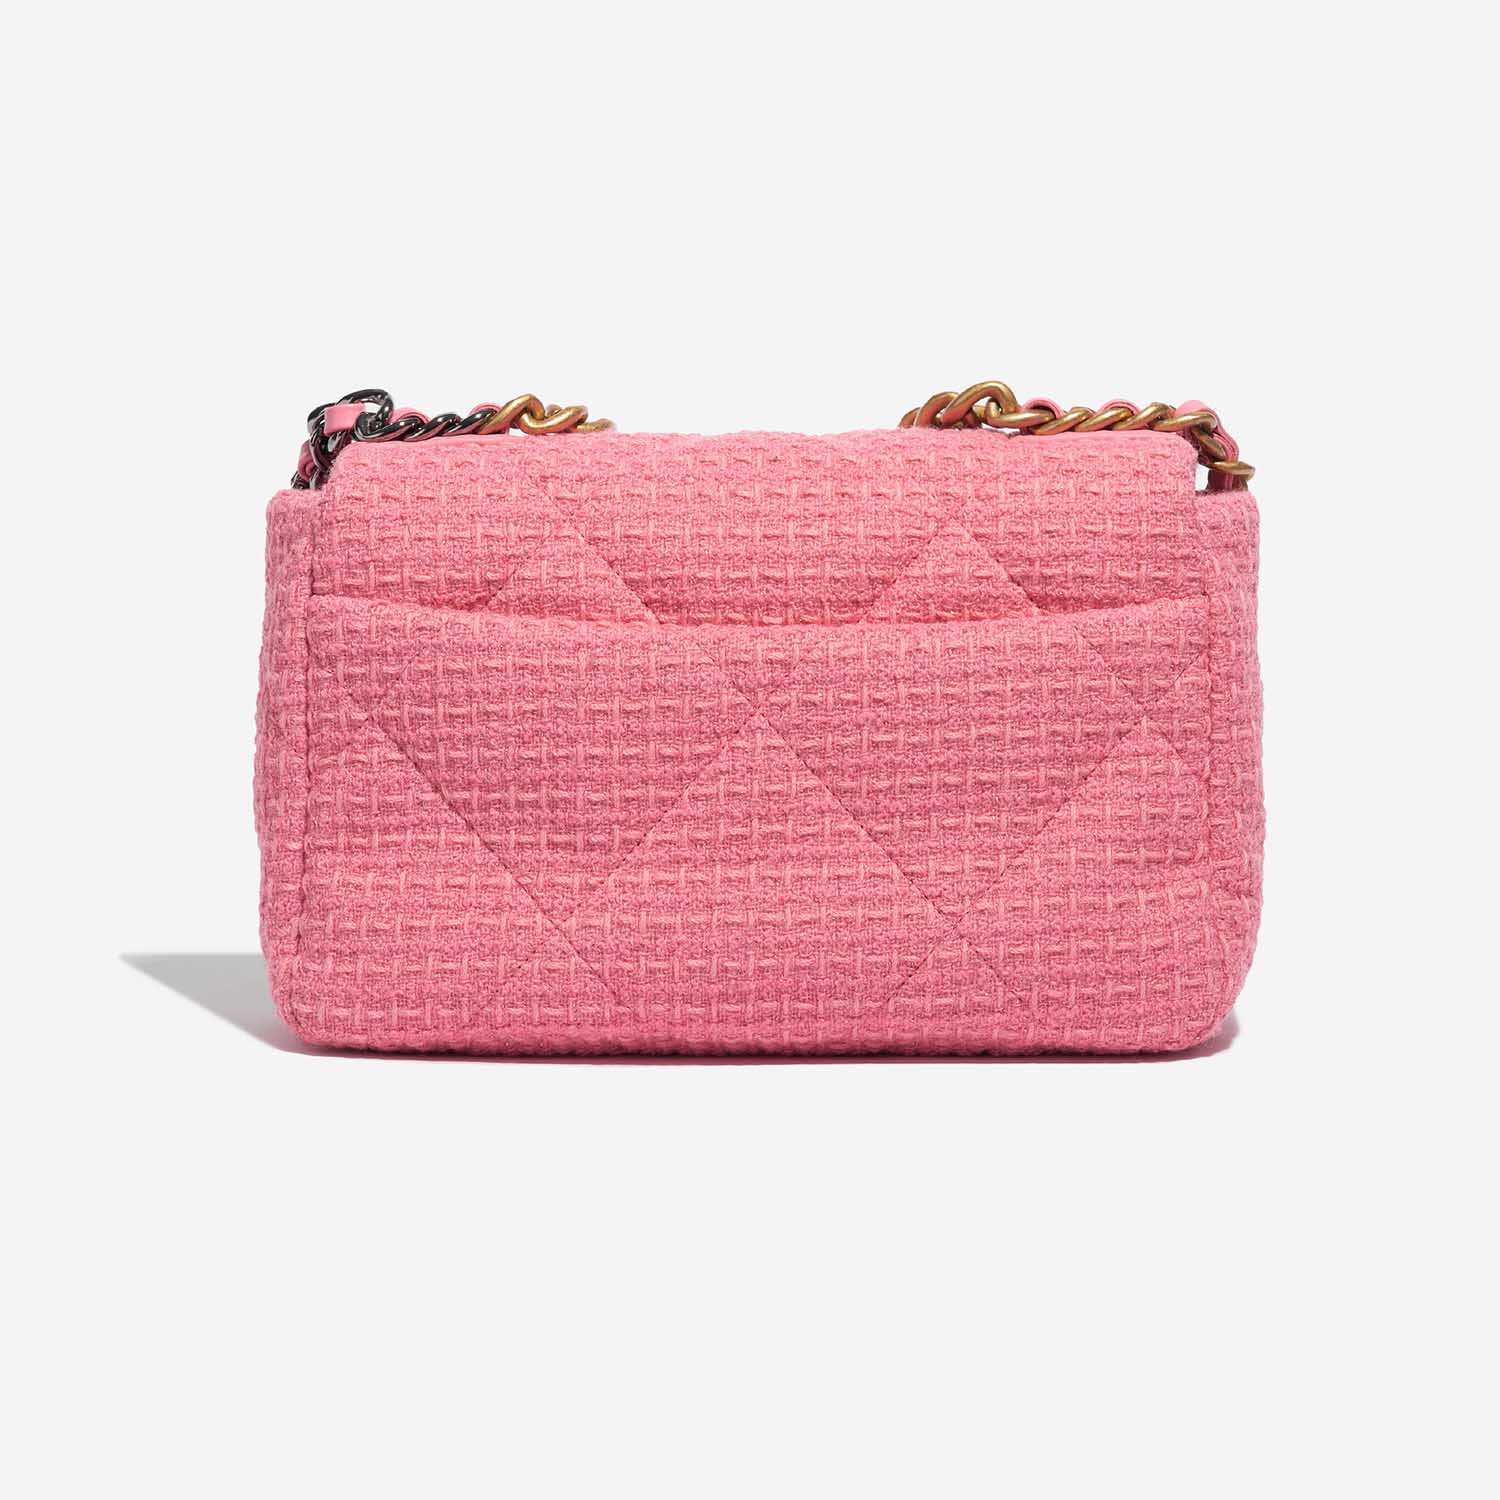 Pre-owned Chanel bag 19 Flap Bag Tweed Light Rosé Rose Back | Sell your designer bag on Saclab.com